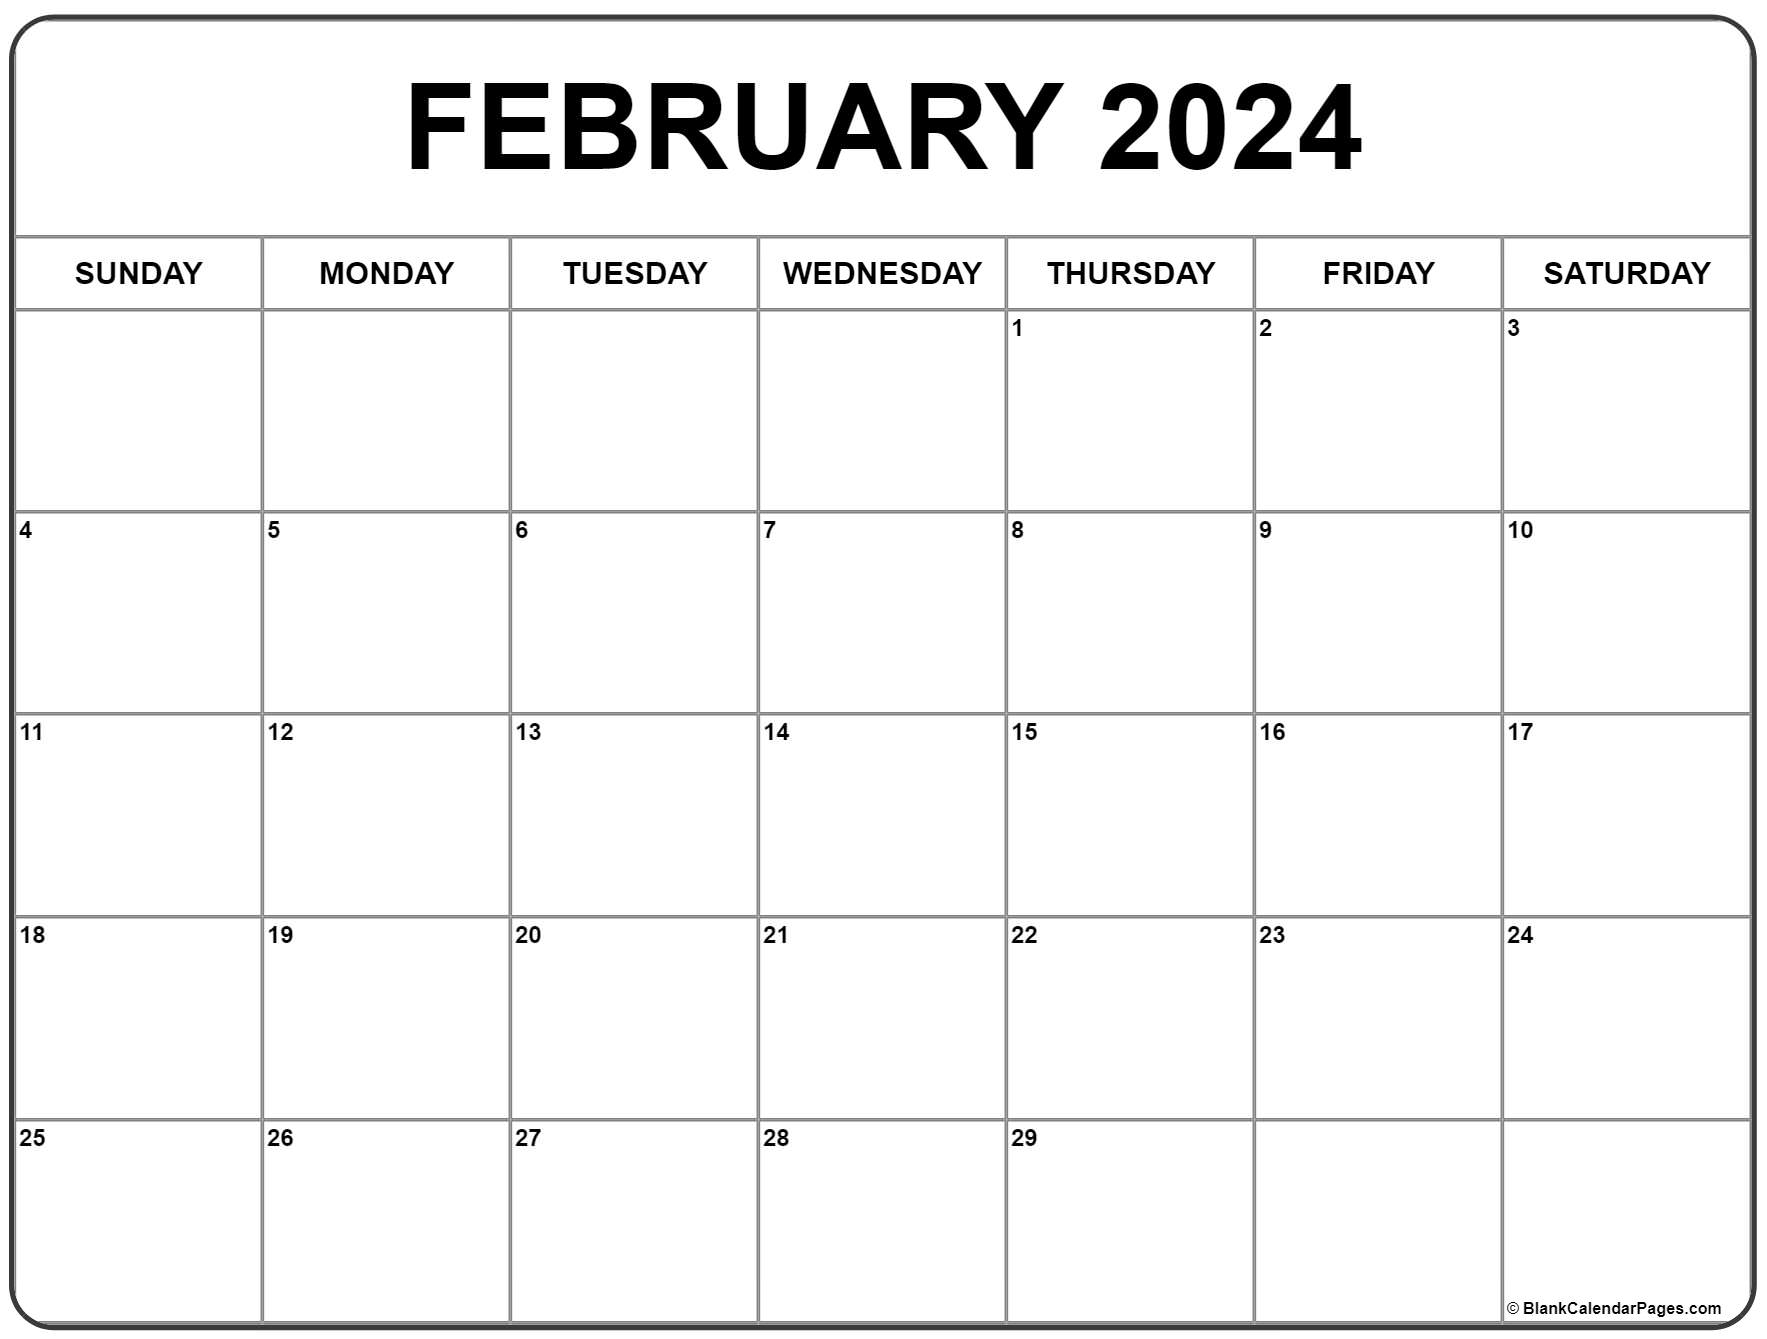 February 2024 Calendar | Free Printable Calendar for Free Feb 2024 Printable Calendar